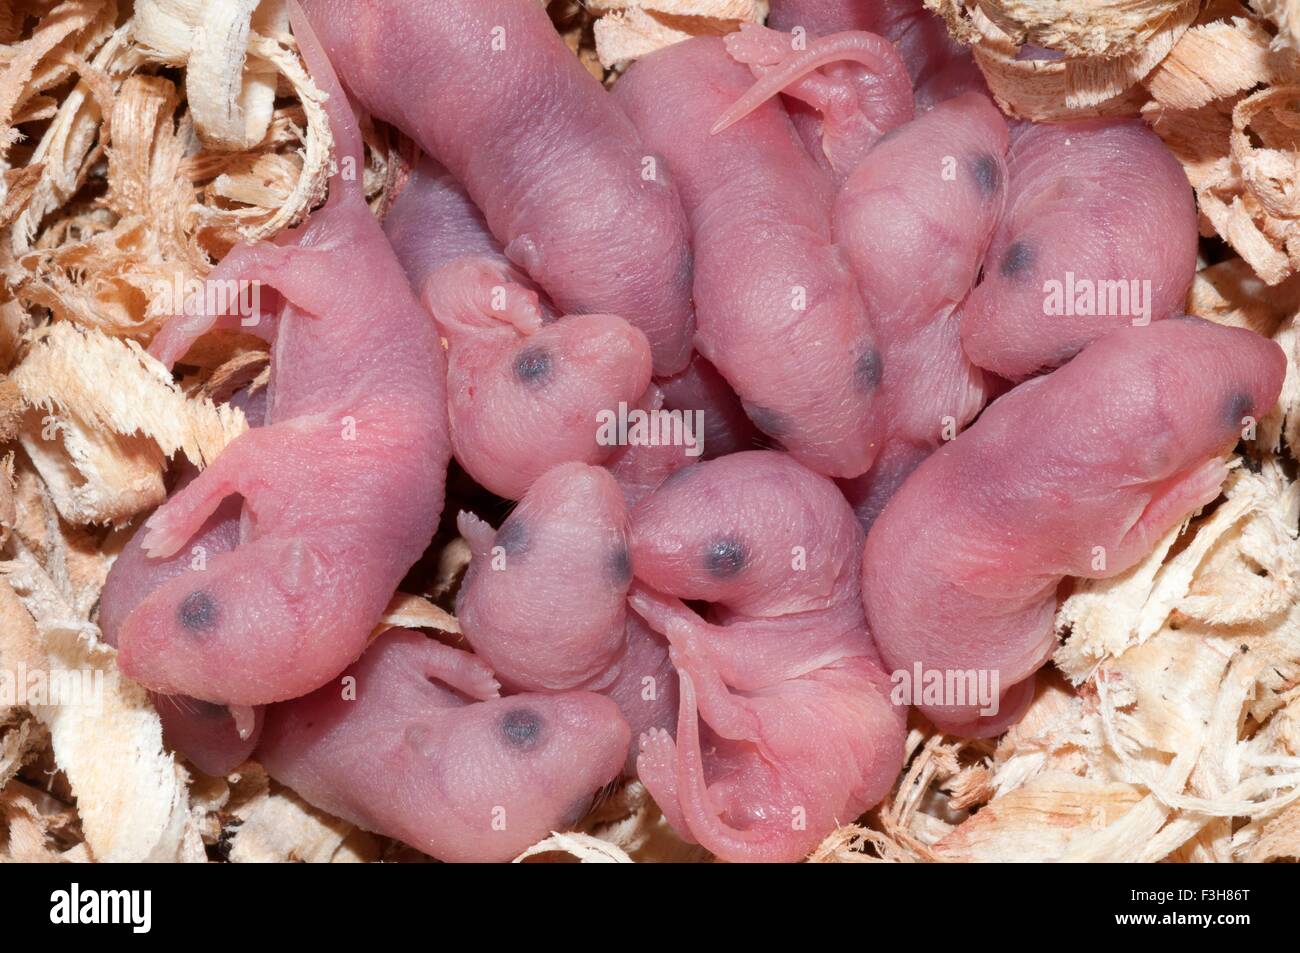 Neugeborenes Baby weiße Mäuse in einem Nest von Holzspänen hergestellt Stockfoto